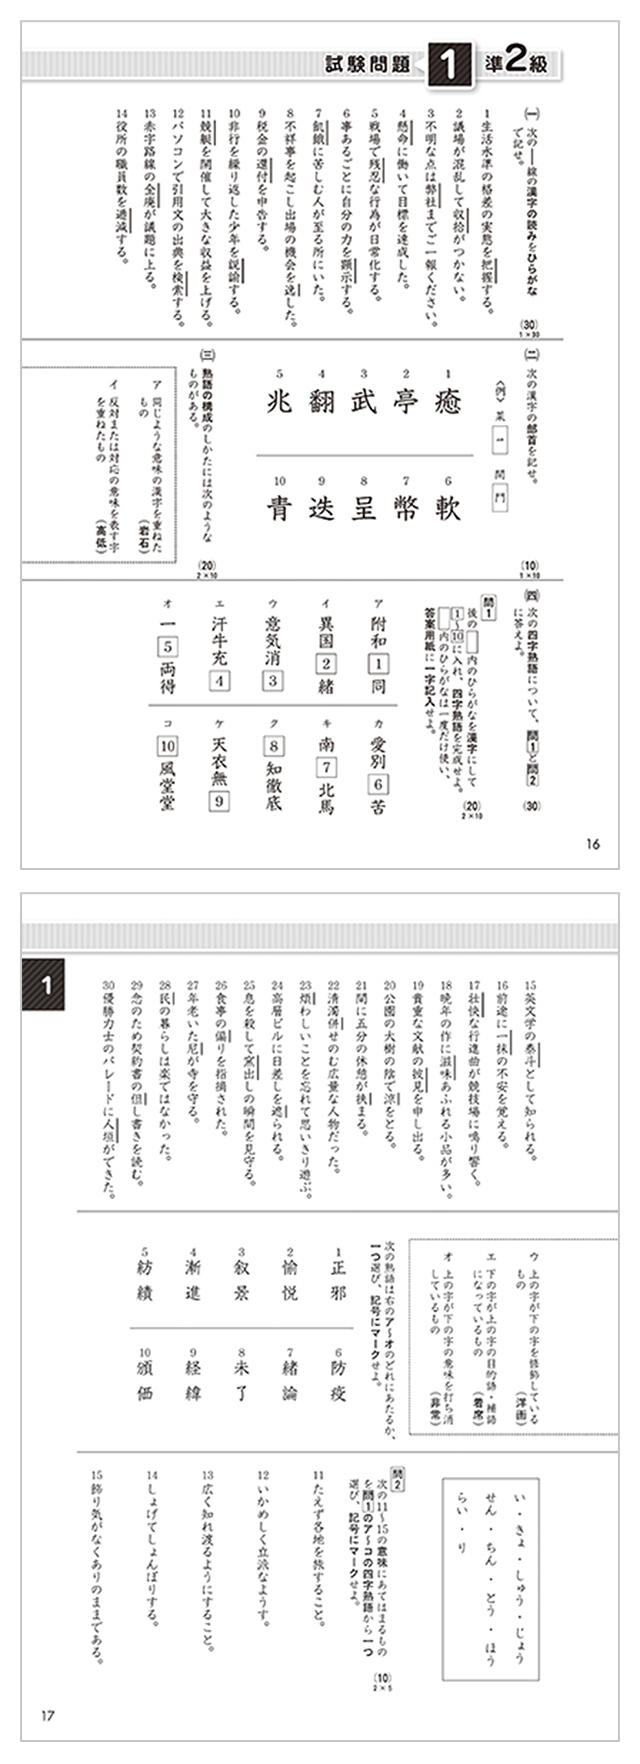 漢検 過去問題集 漢検の教材 日本漢字能力検定